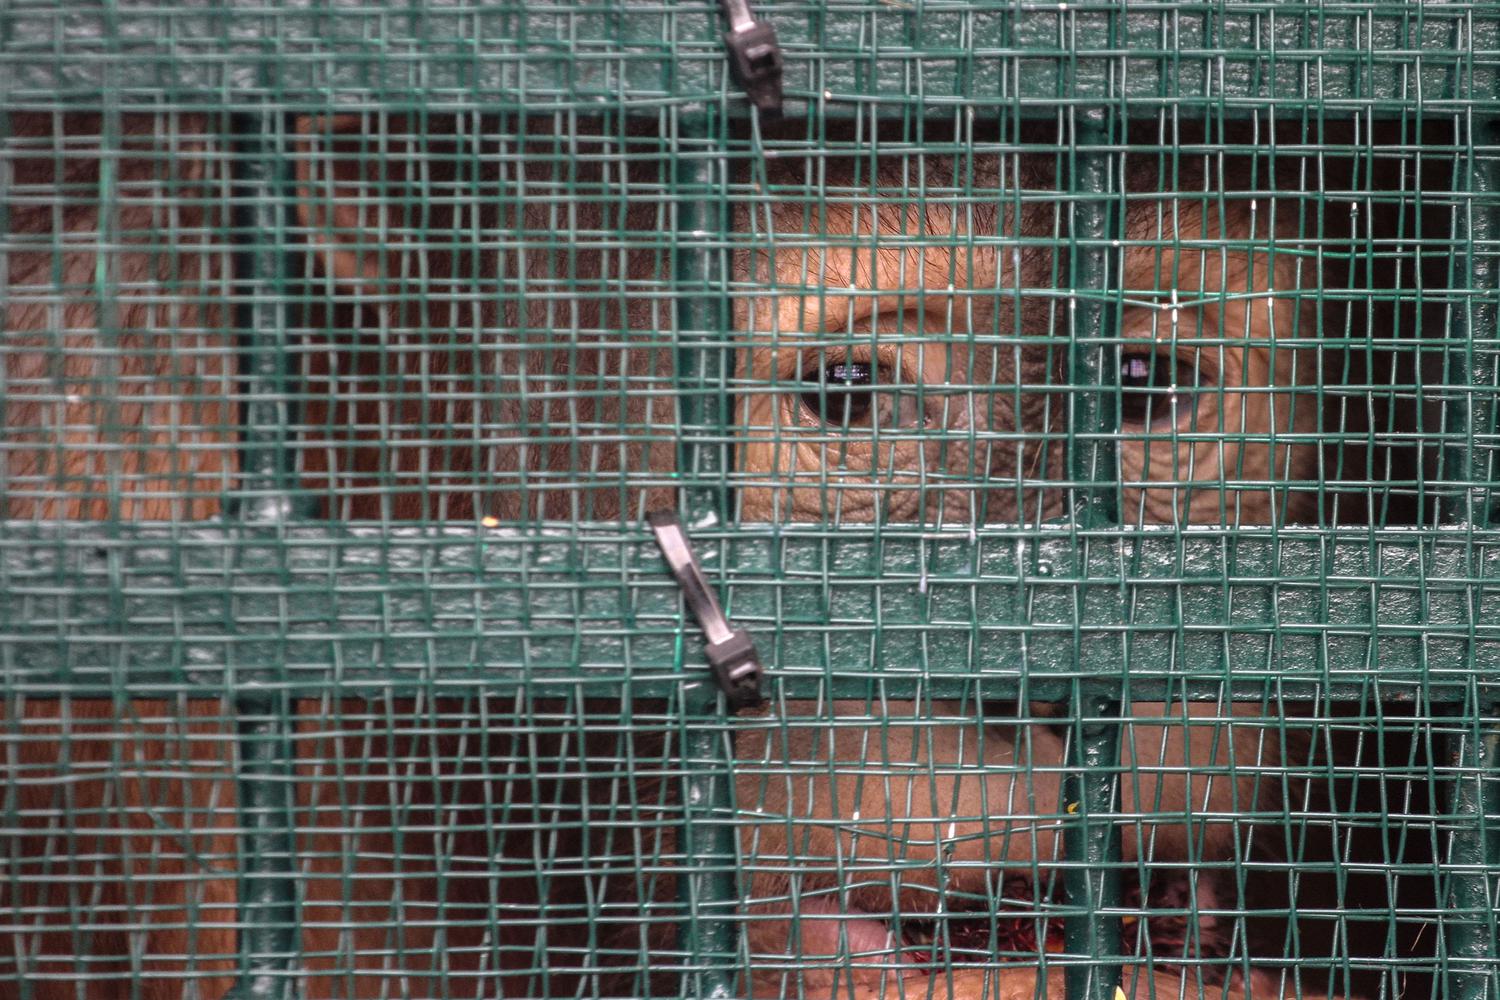 Salah satu dari sembilan orangutan berada di dalam kandang di saat Repatriasi Orangutan Sumatra (Pongo abelii) dari Malaysia ke Indonesia, di Terminal Kargo Bandara Kualanamu Deli Serdang, Sumatera Utara, Jumat (18/12/2020).